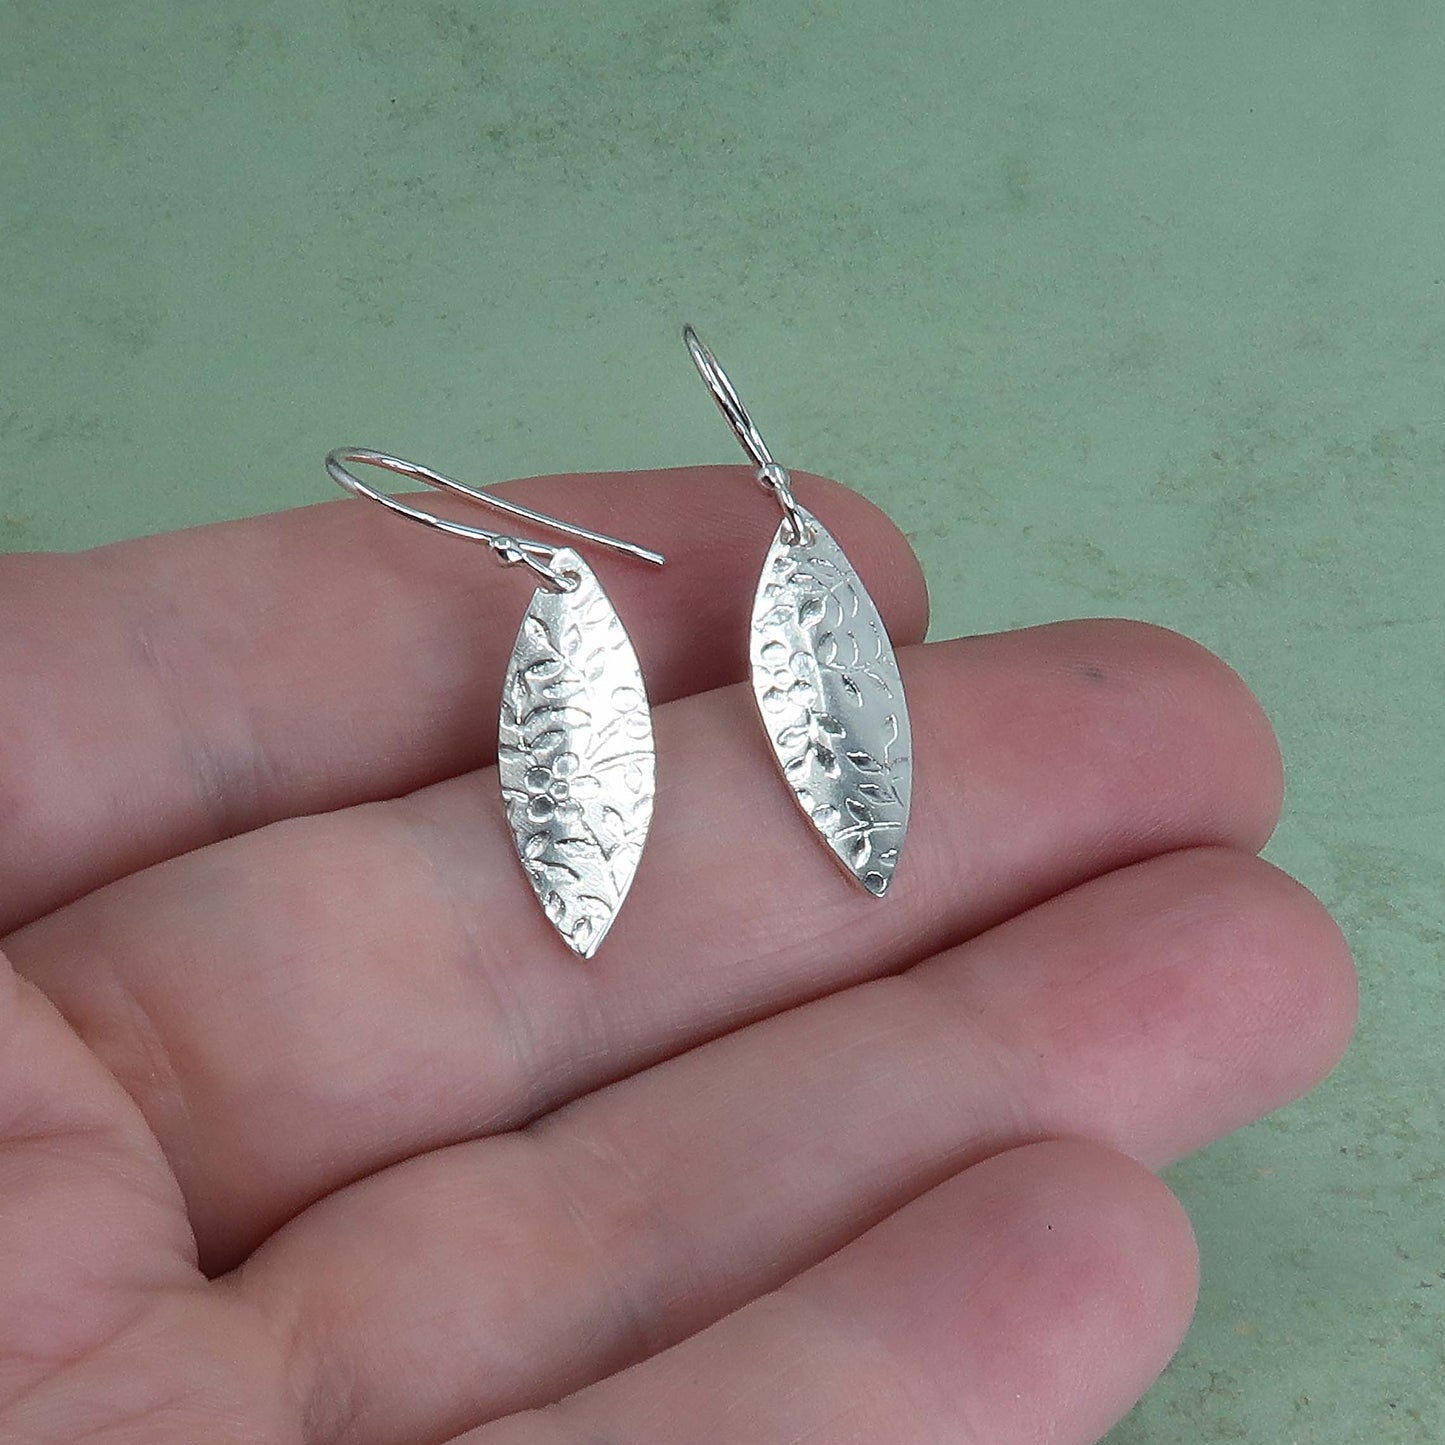 Dangly leaf earrings in sterling silver